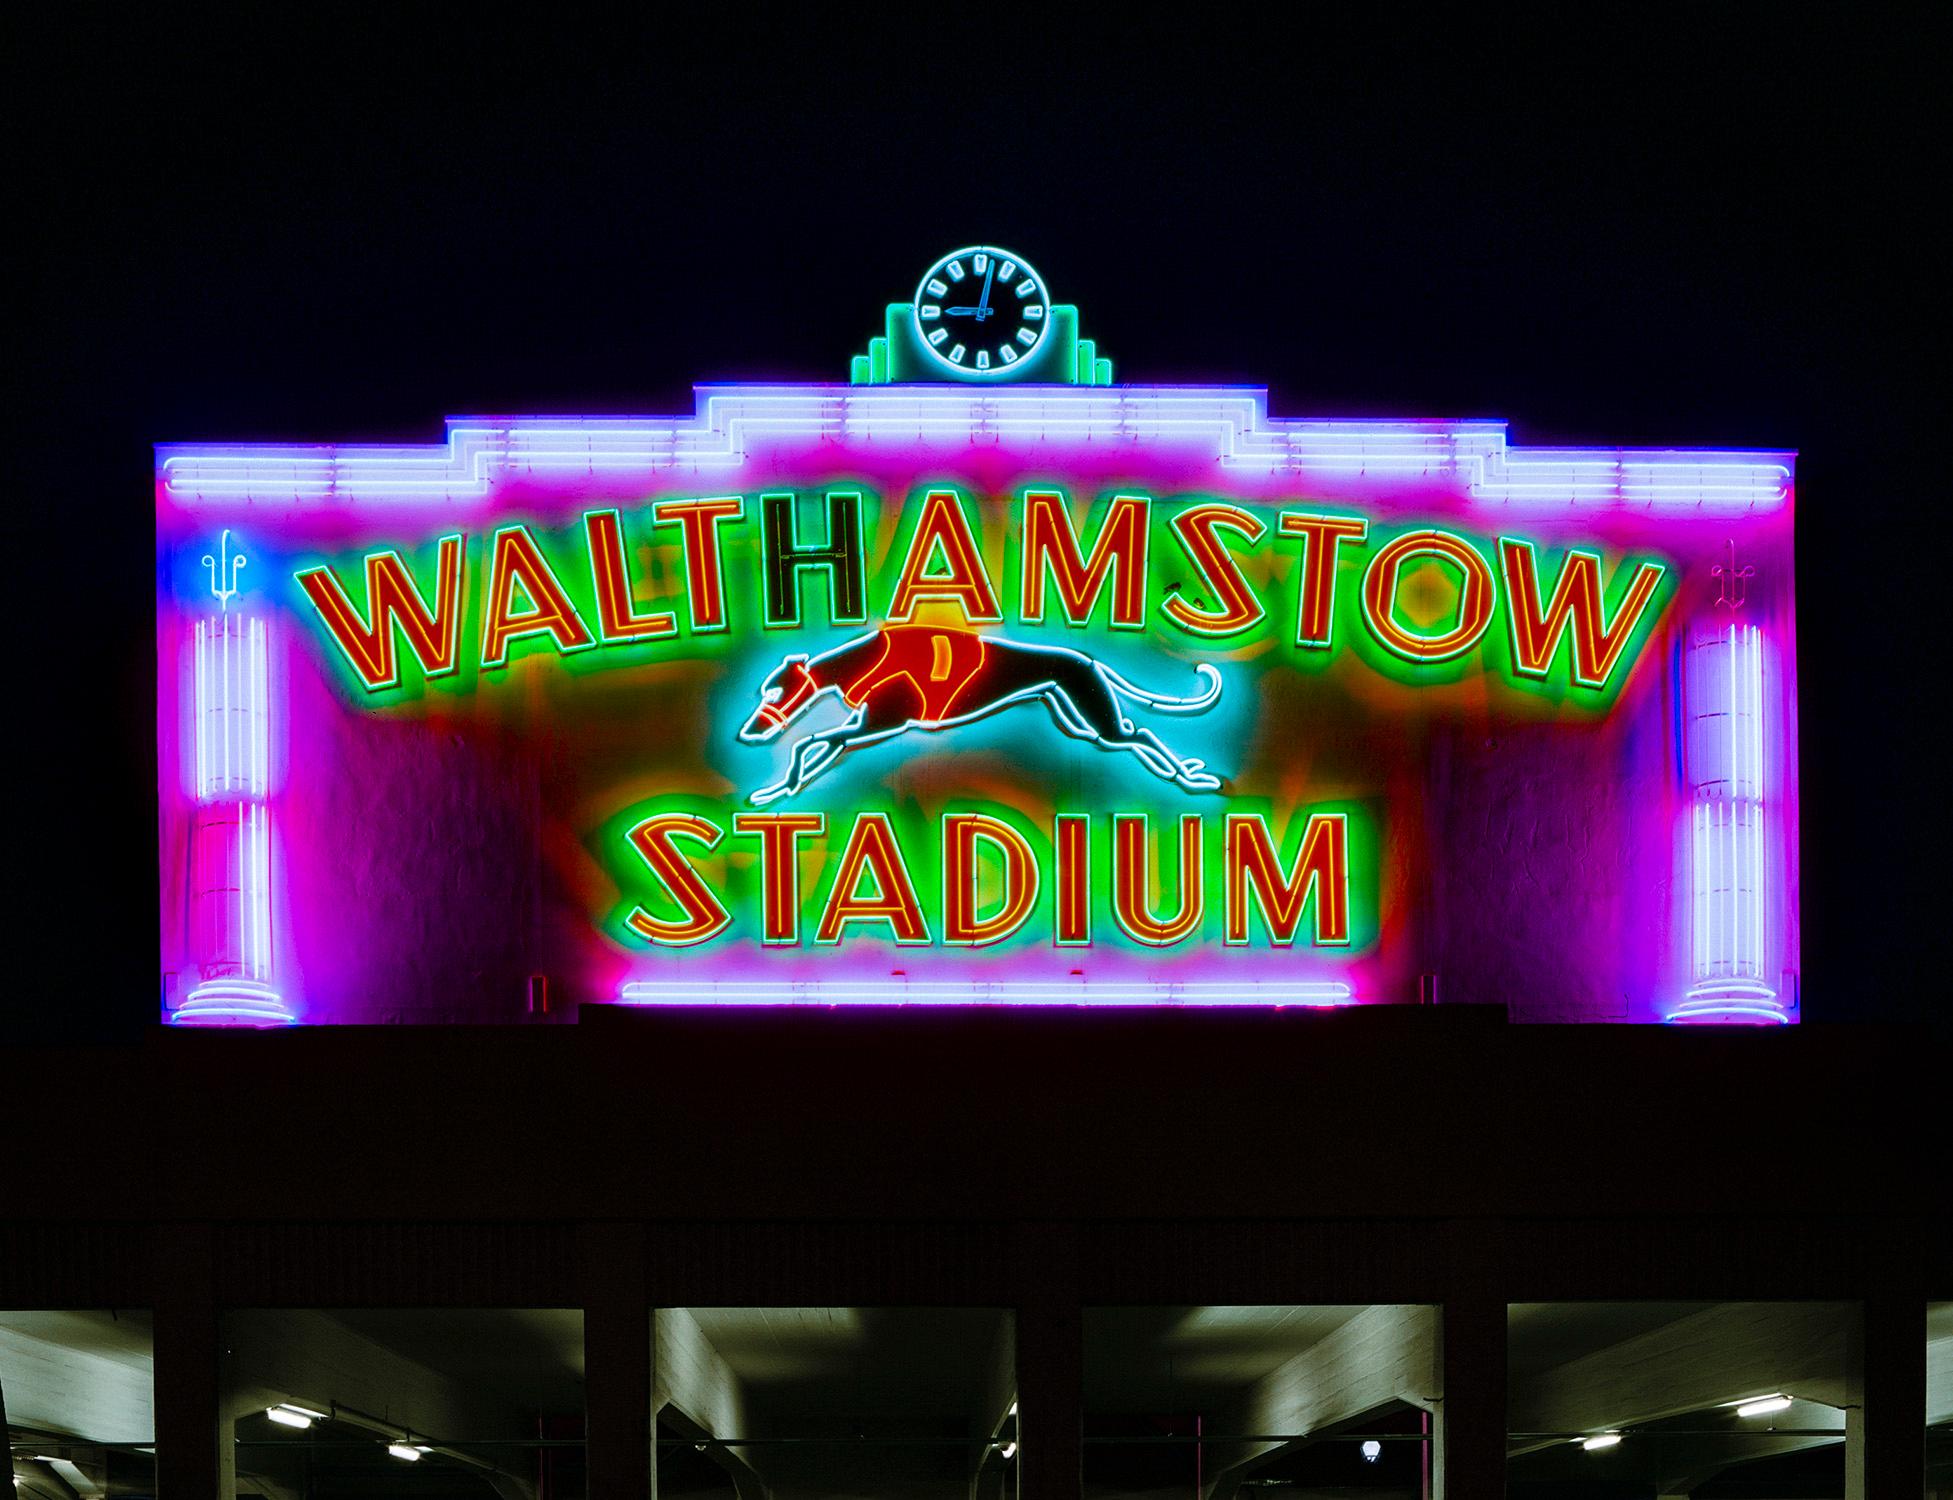 Richard Heeps Color Photograph – Walthamstow Stadium at Night, London – britische Farbfotografie mit Schild